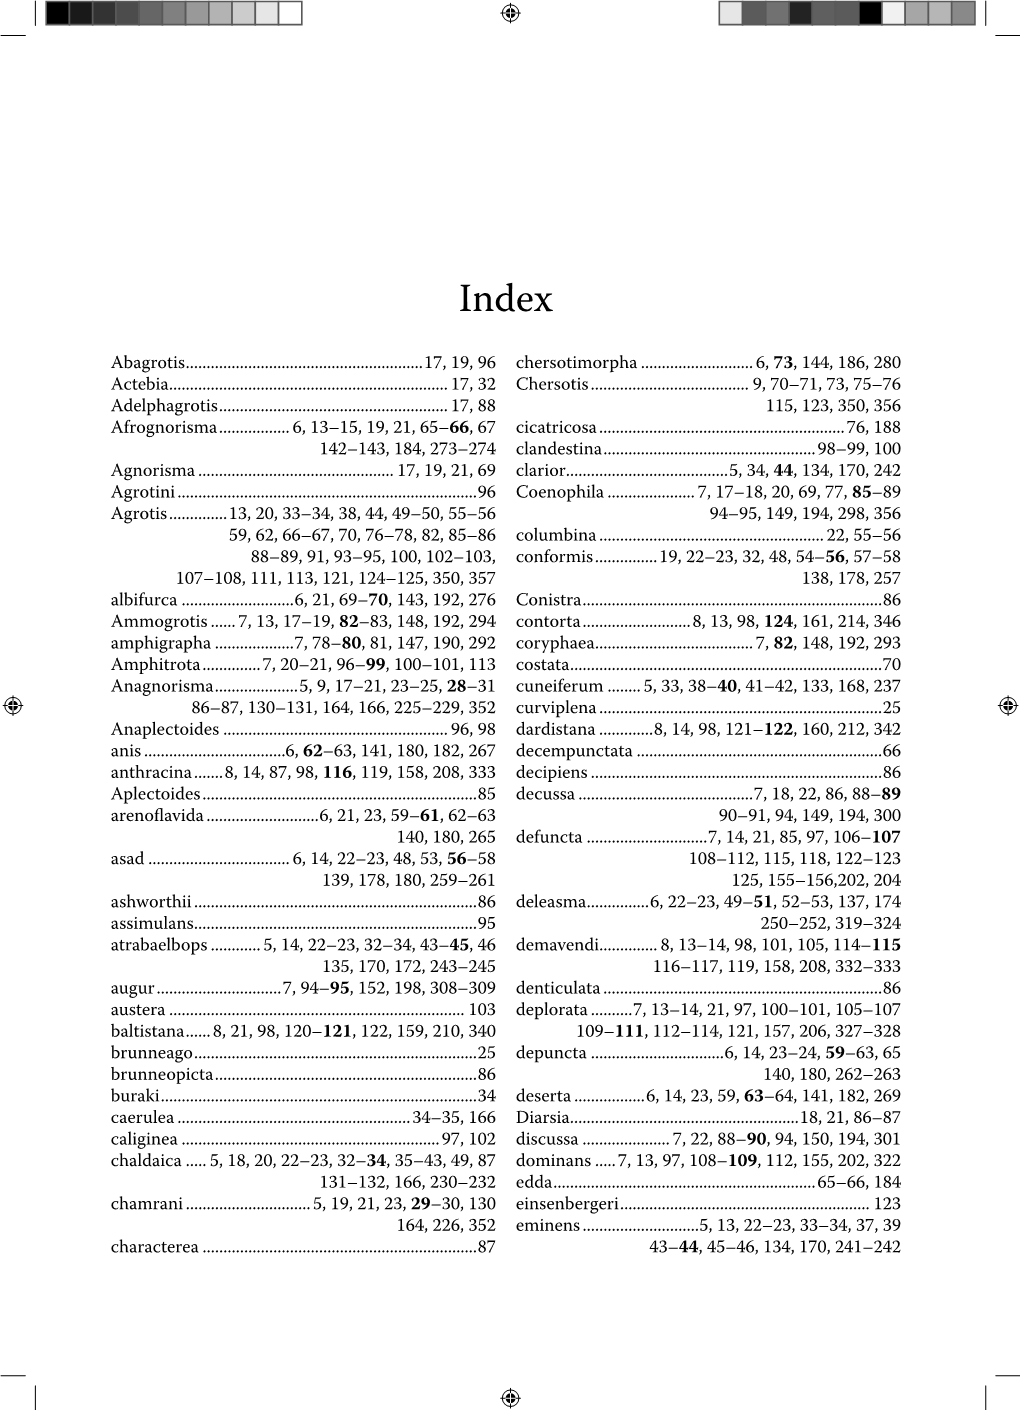 359-362 Gnorisma Index.Indd